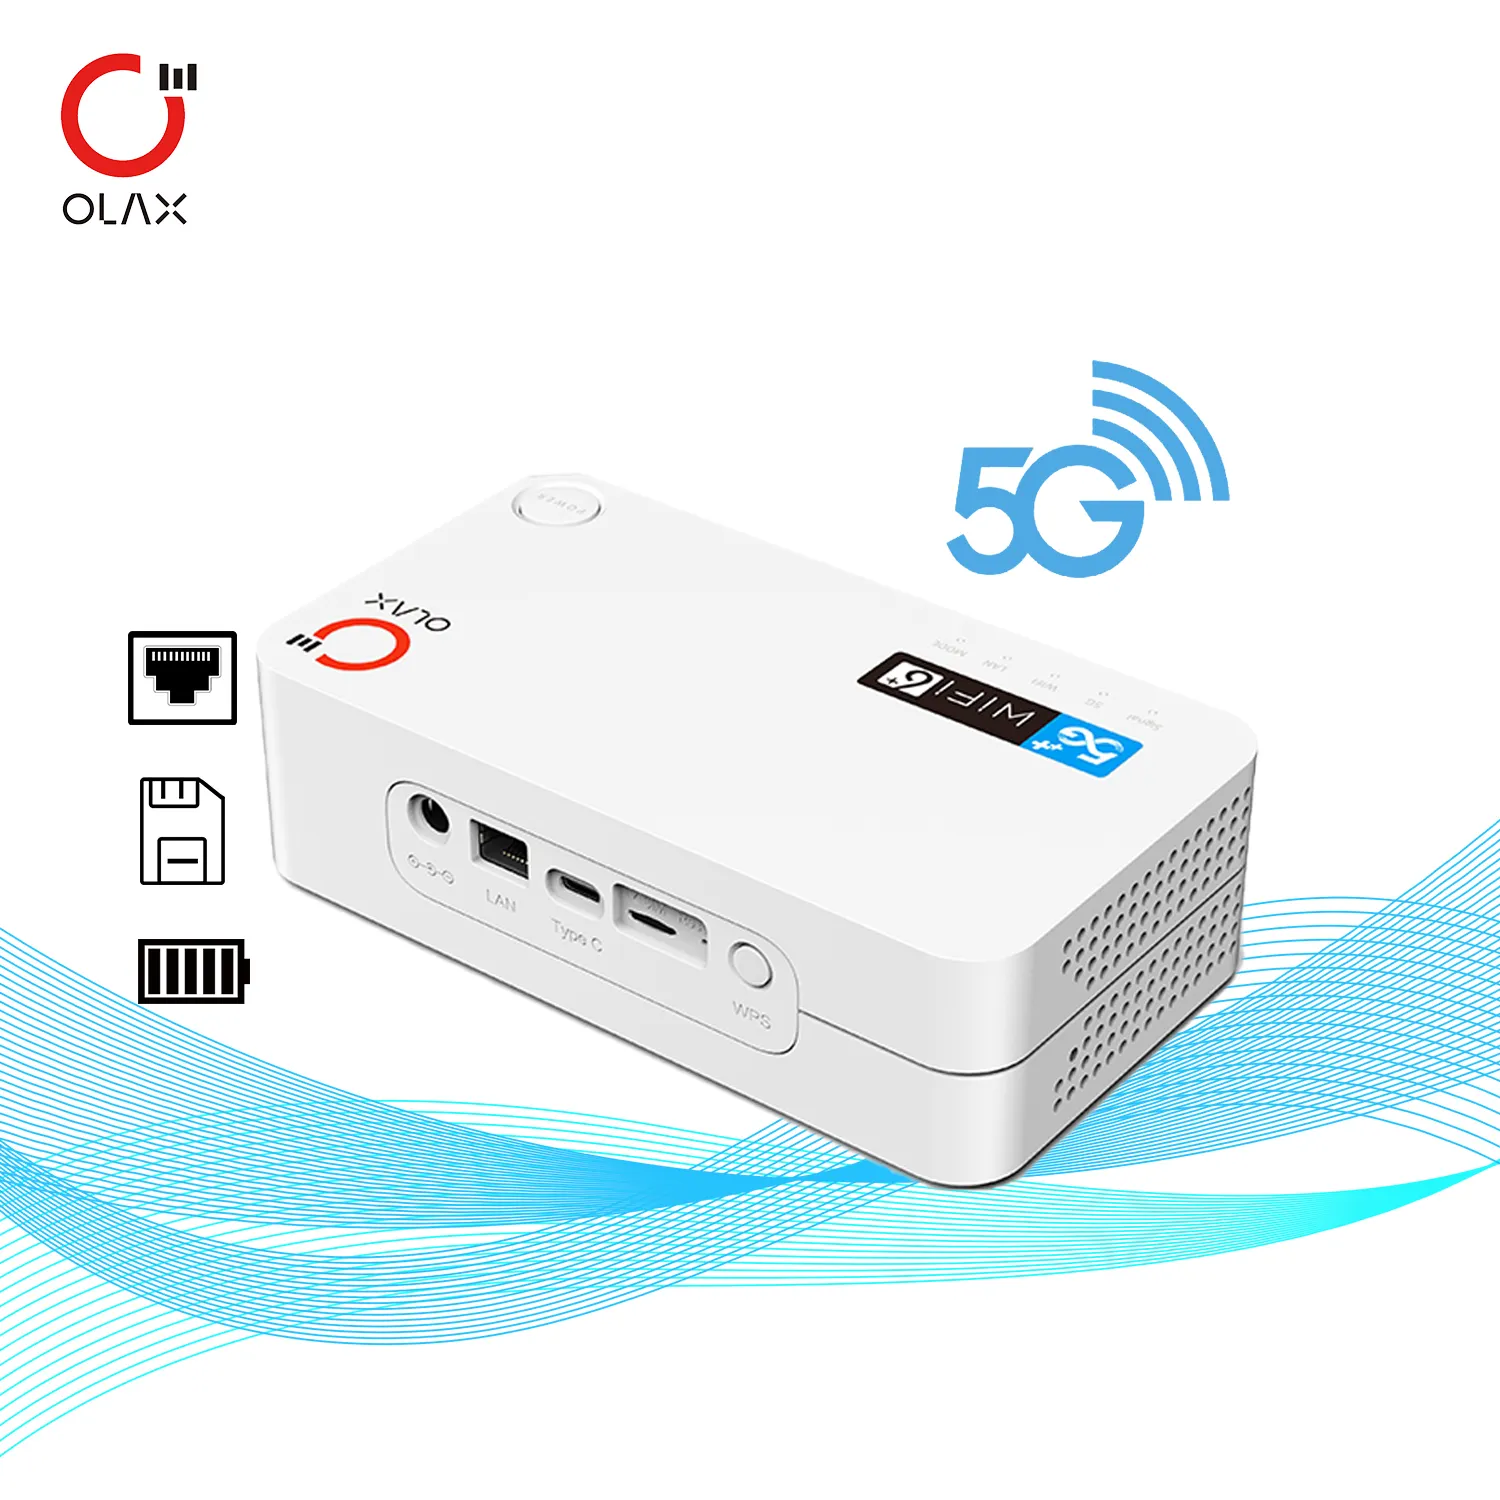 Olax 5G CPE Router G5010 WiFi6 con batería de 4000mAh Enrutador 5G con ranura para tarjeta SIM Módem 5g